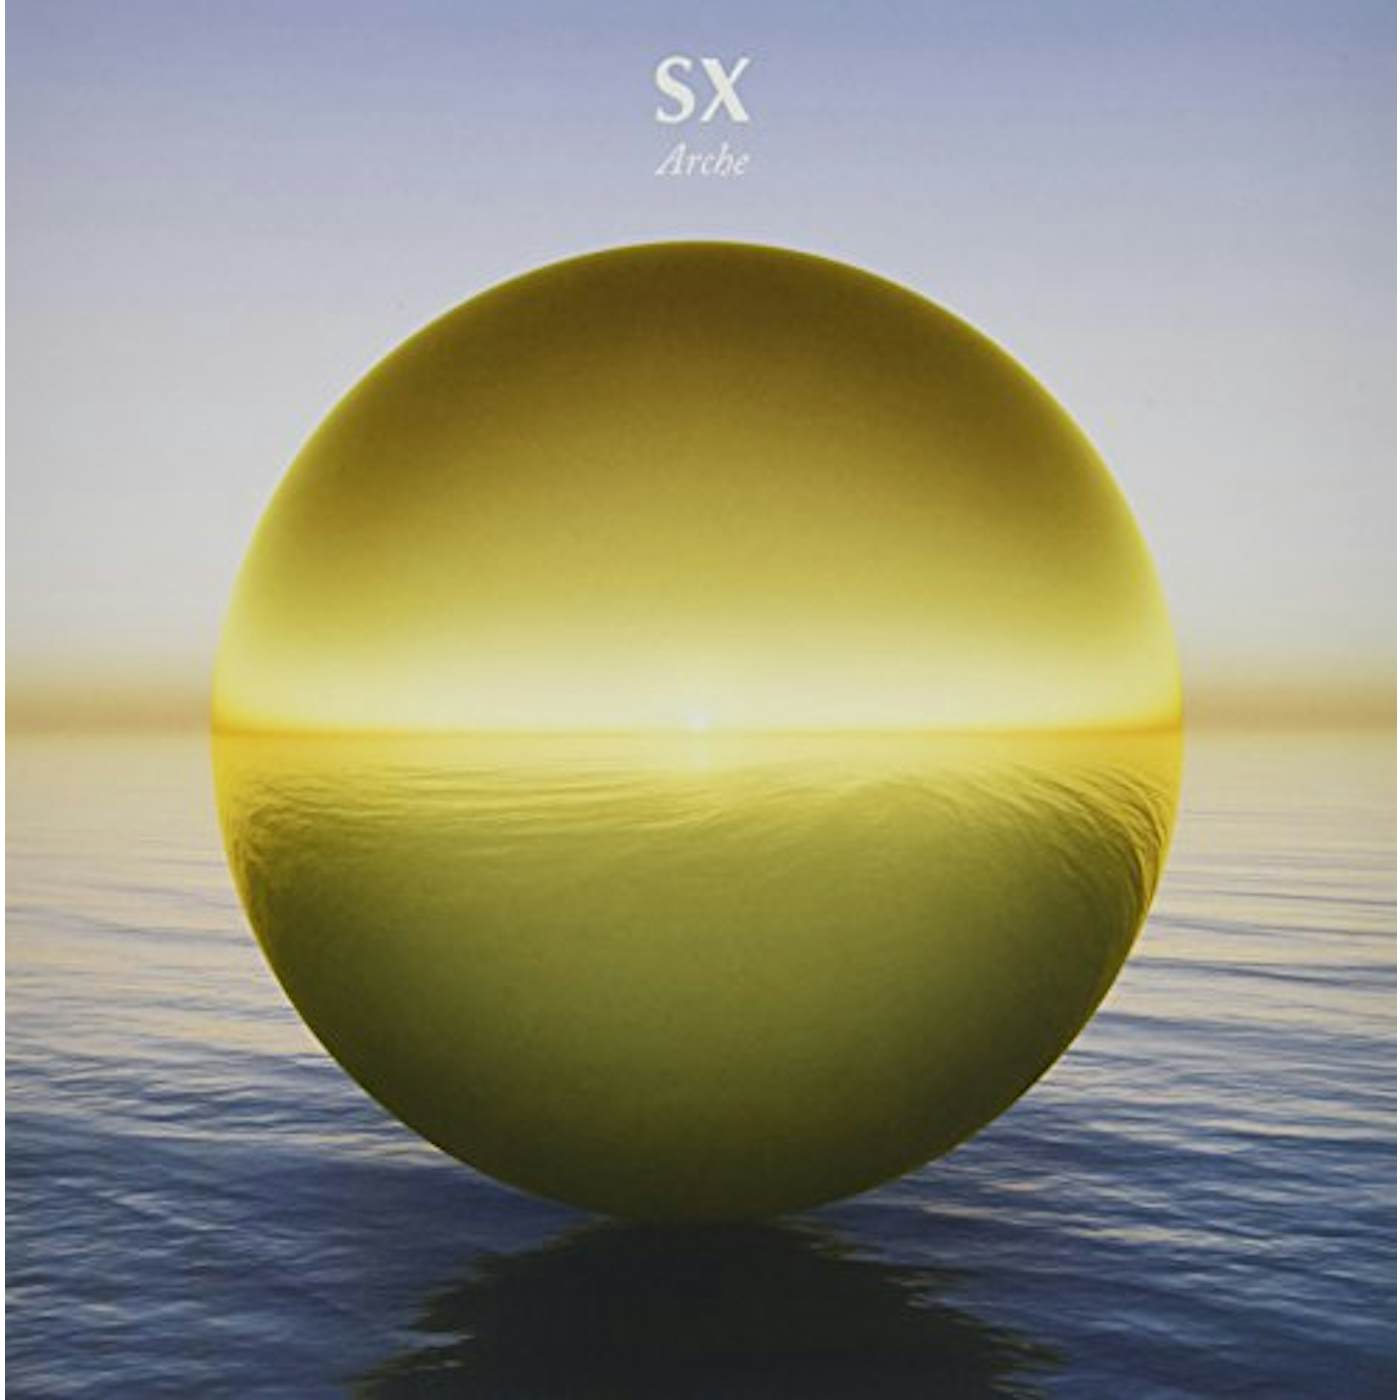 SX Arche Vinyl Record